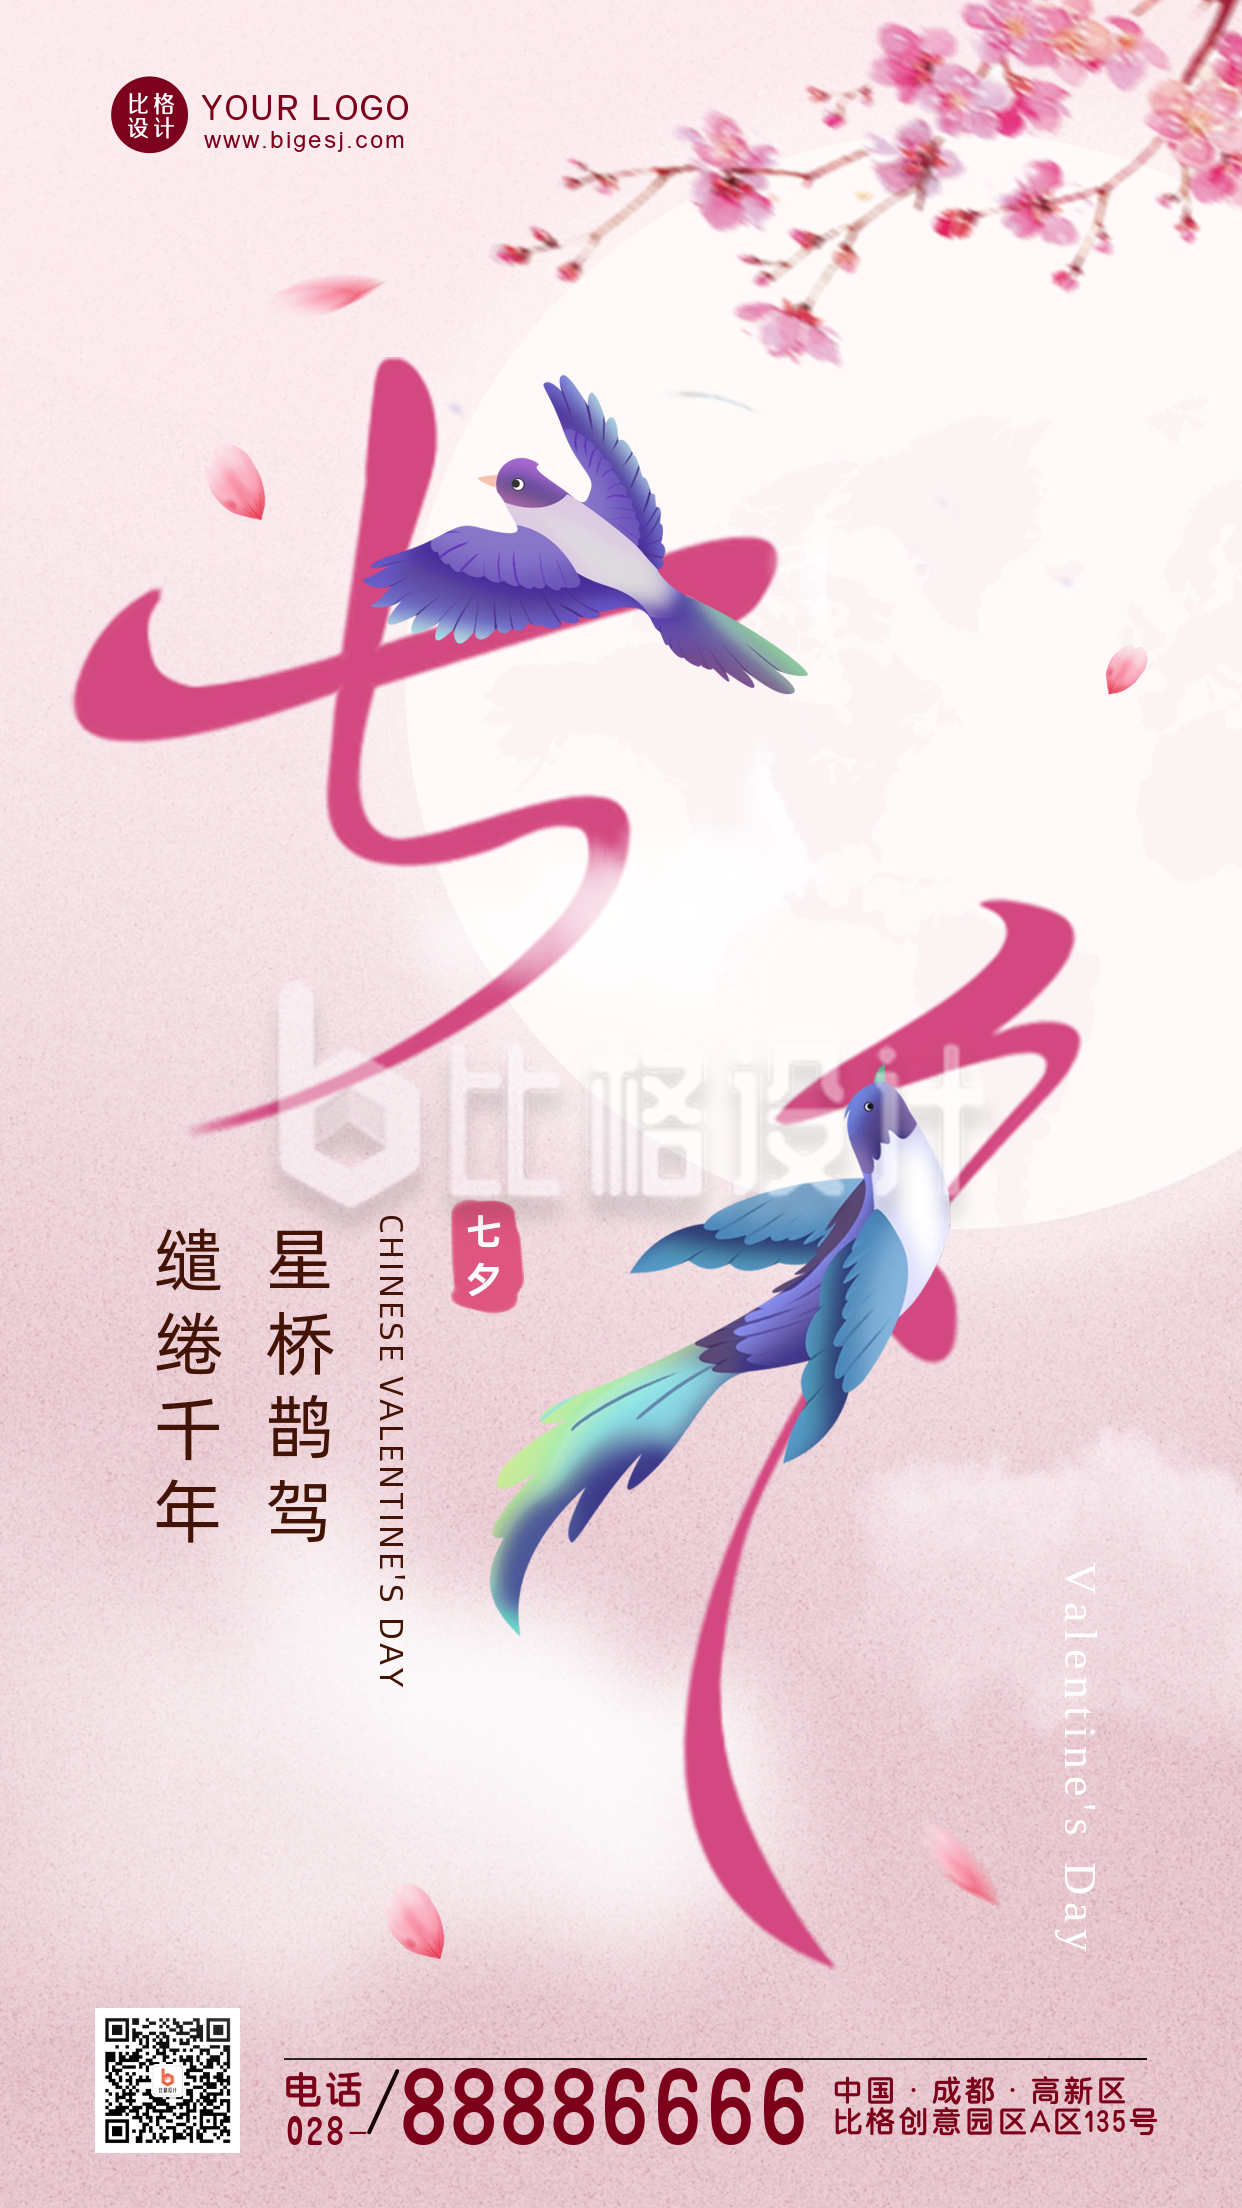 七夕节喜鹊创意字体海报